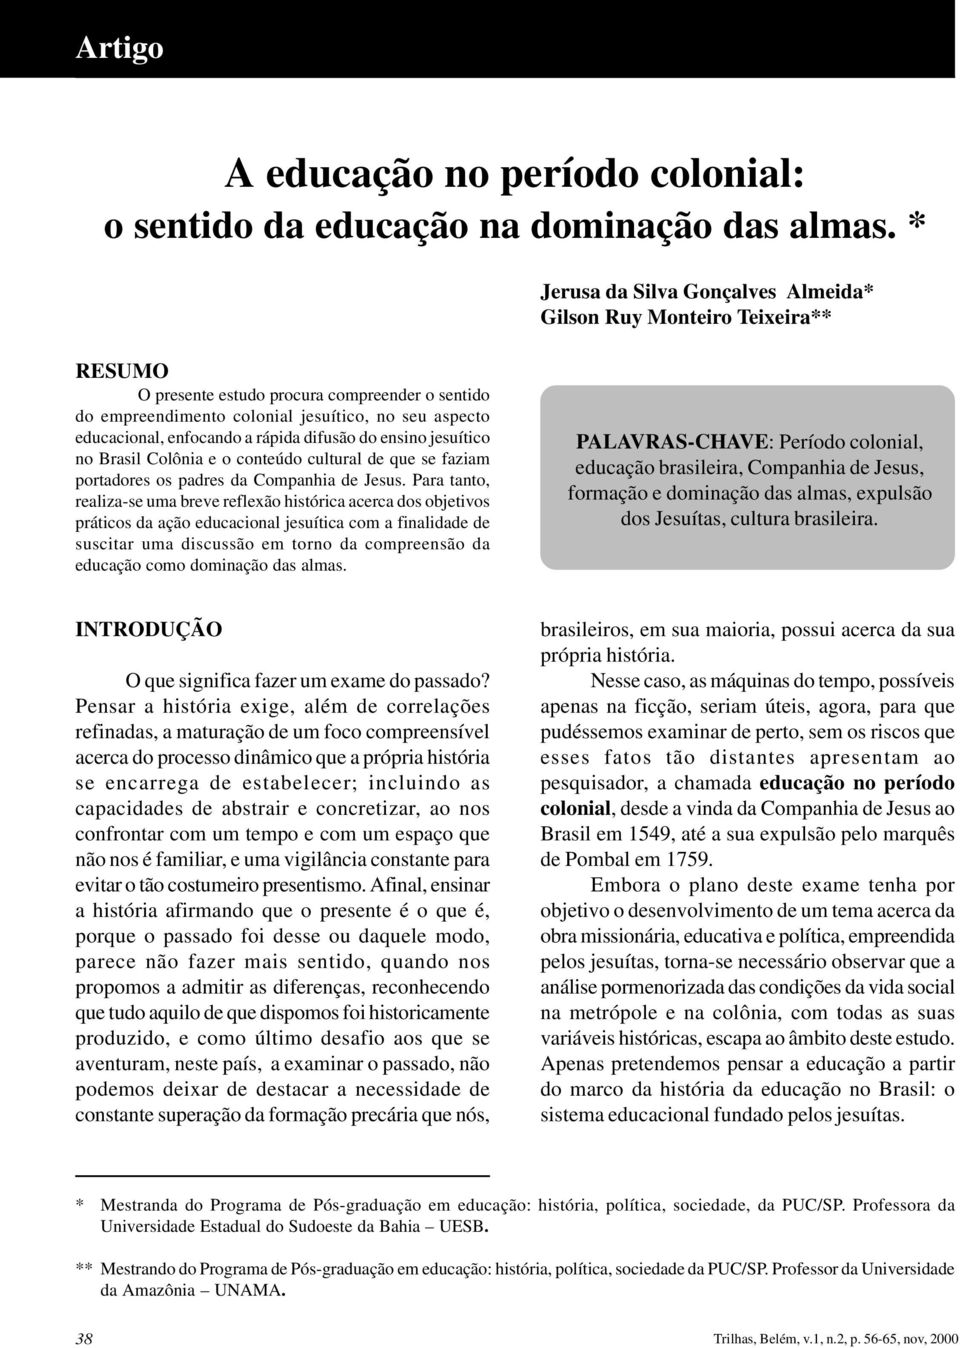 a rápida difusão do ensino jesuítico no Brasil Colônia e o conteúdo cultural de que se faziam portadores os padres da Companhia de Jesus.